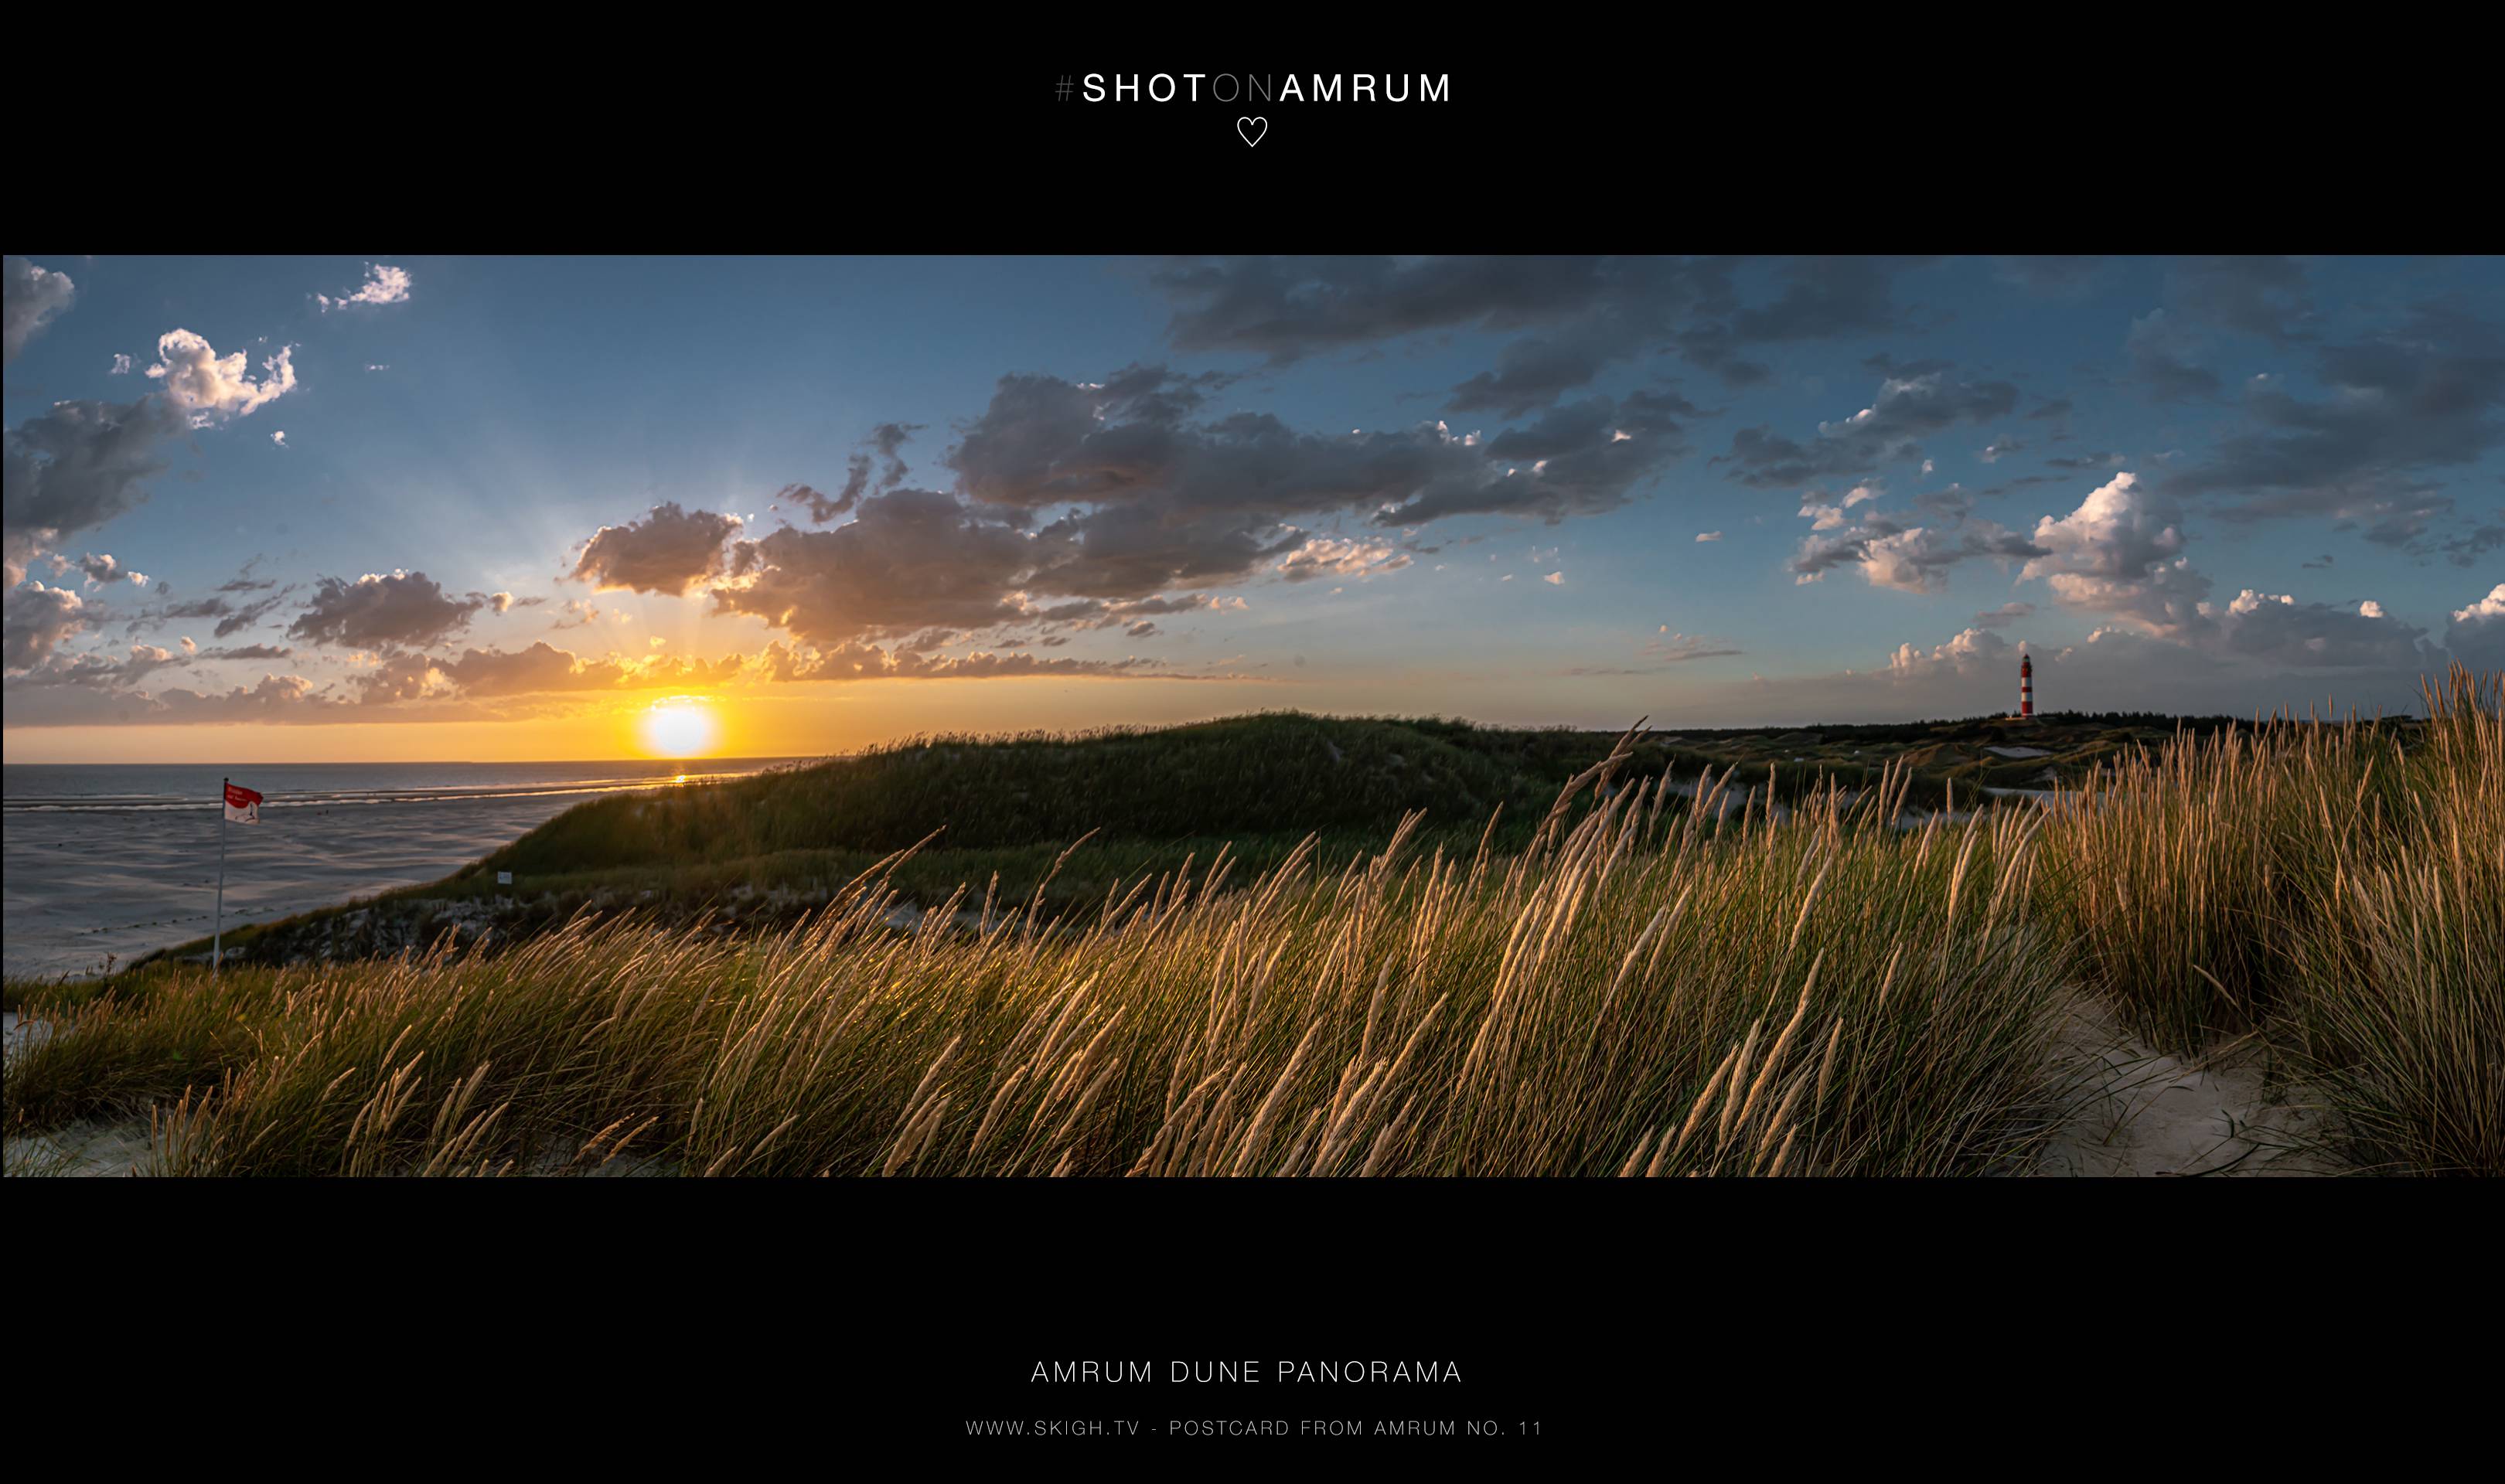 Amrum Dune Panorama